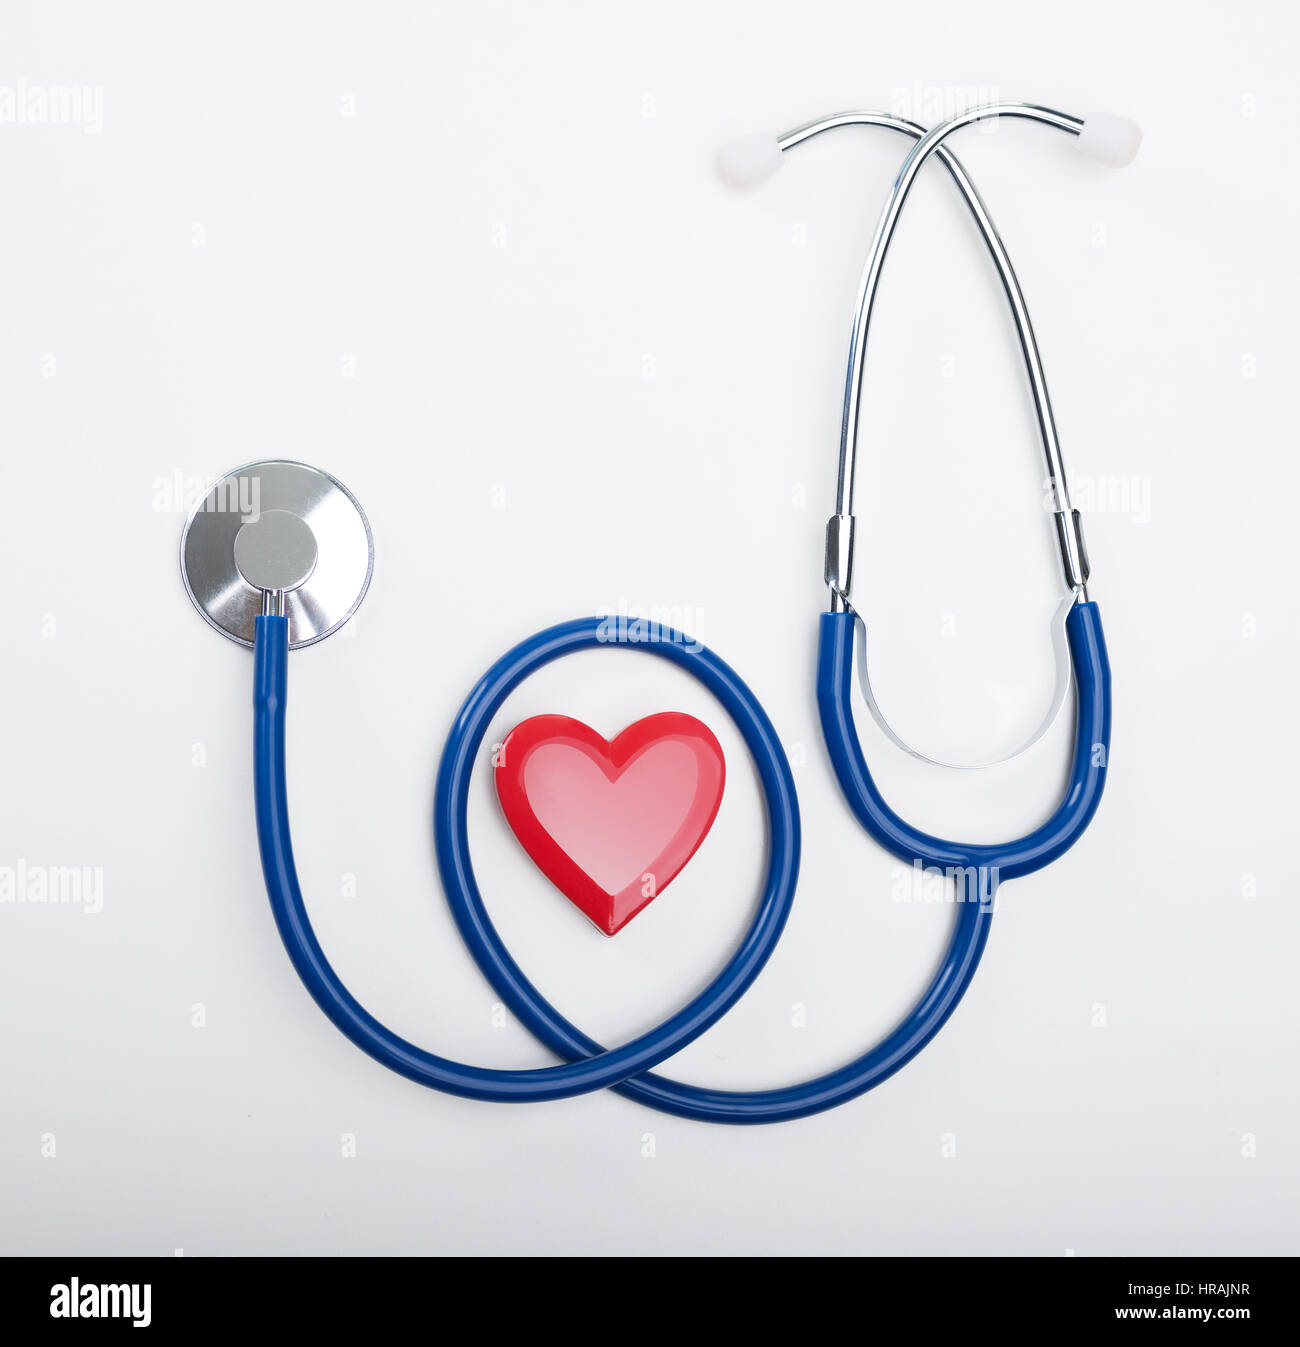 Blaue Stethoskop und Herz Form, Herz-Kreislauf-Krankheiten und Prävention-Konzept. Stockfoto